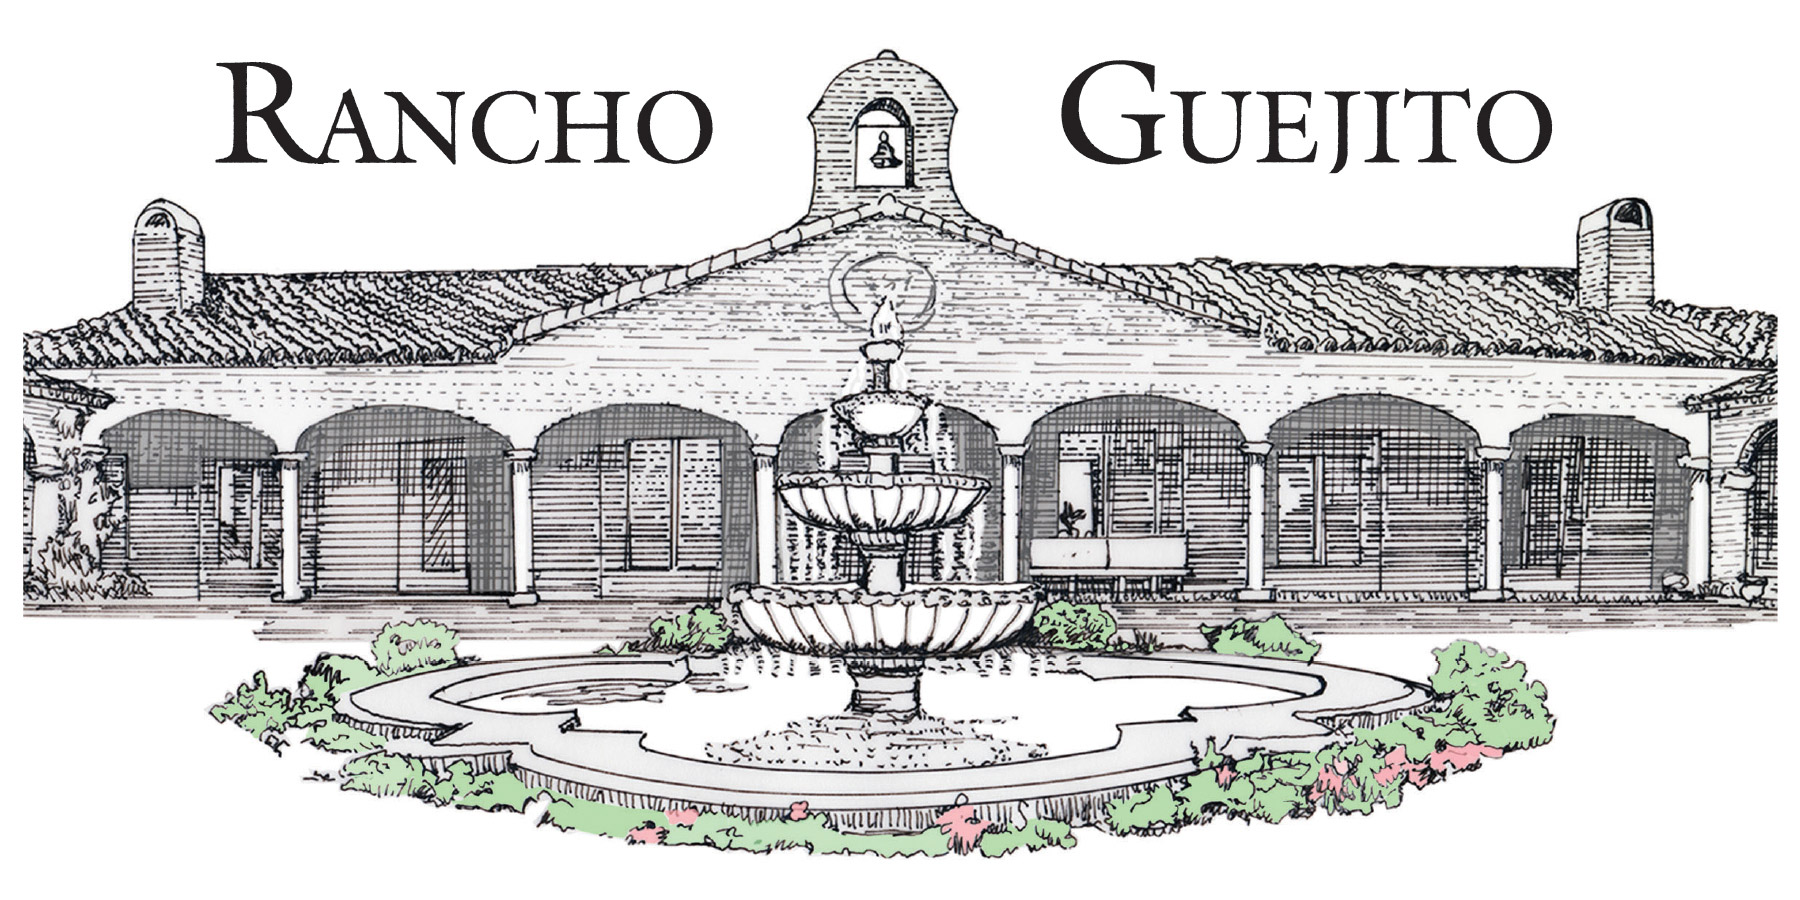 Rancho Guejito